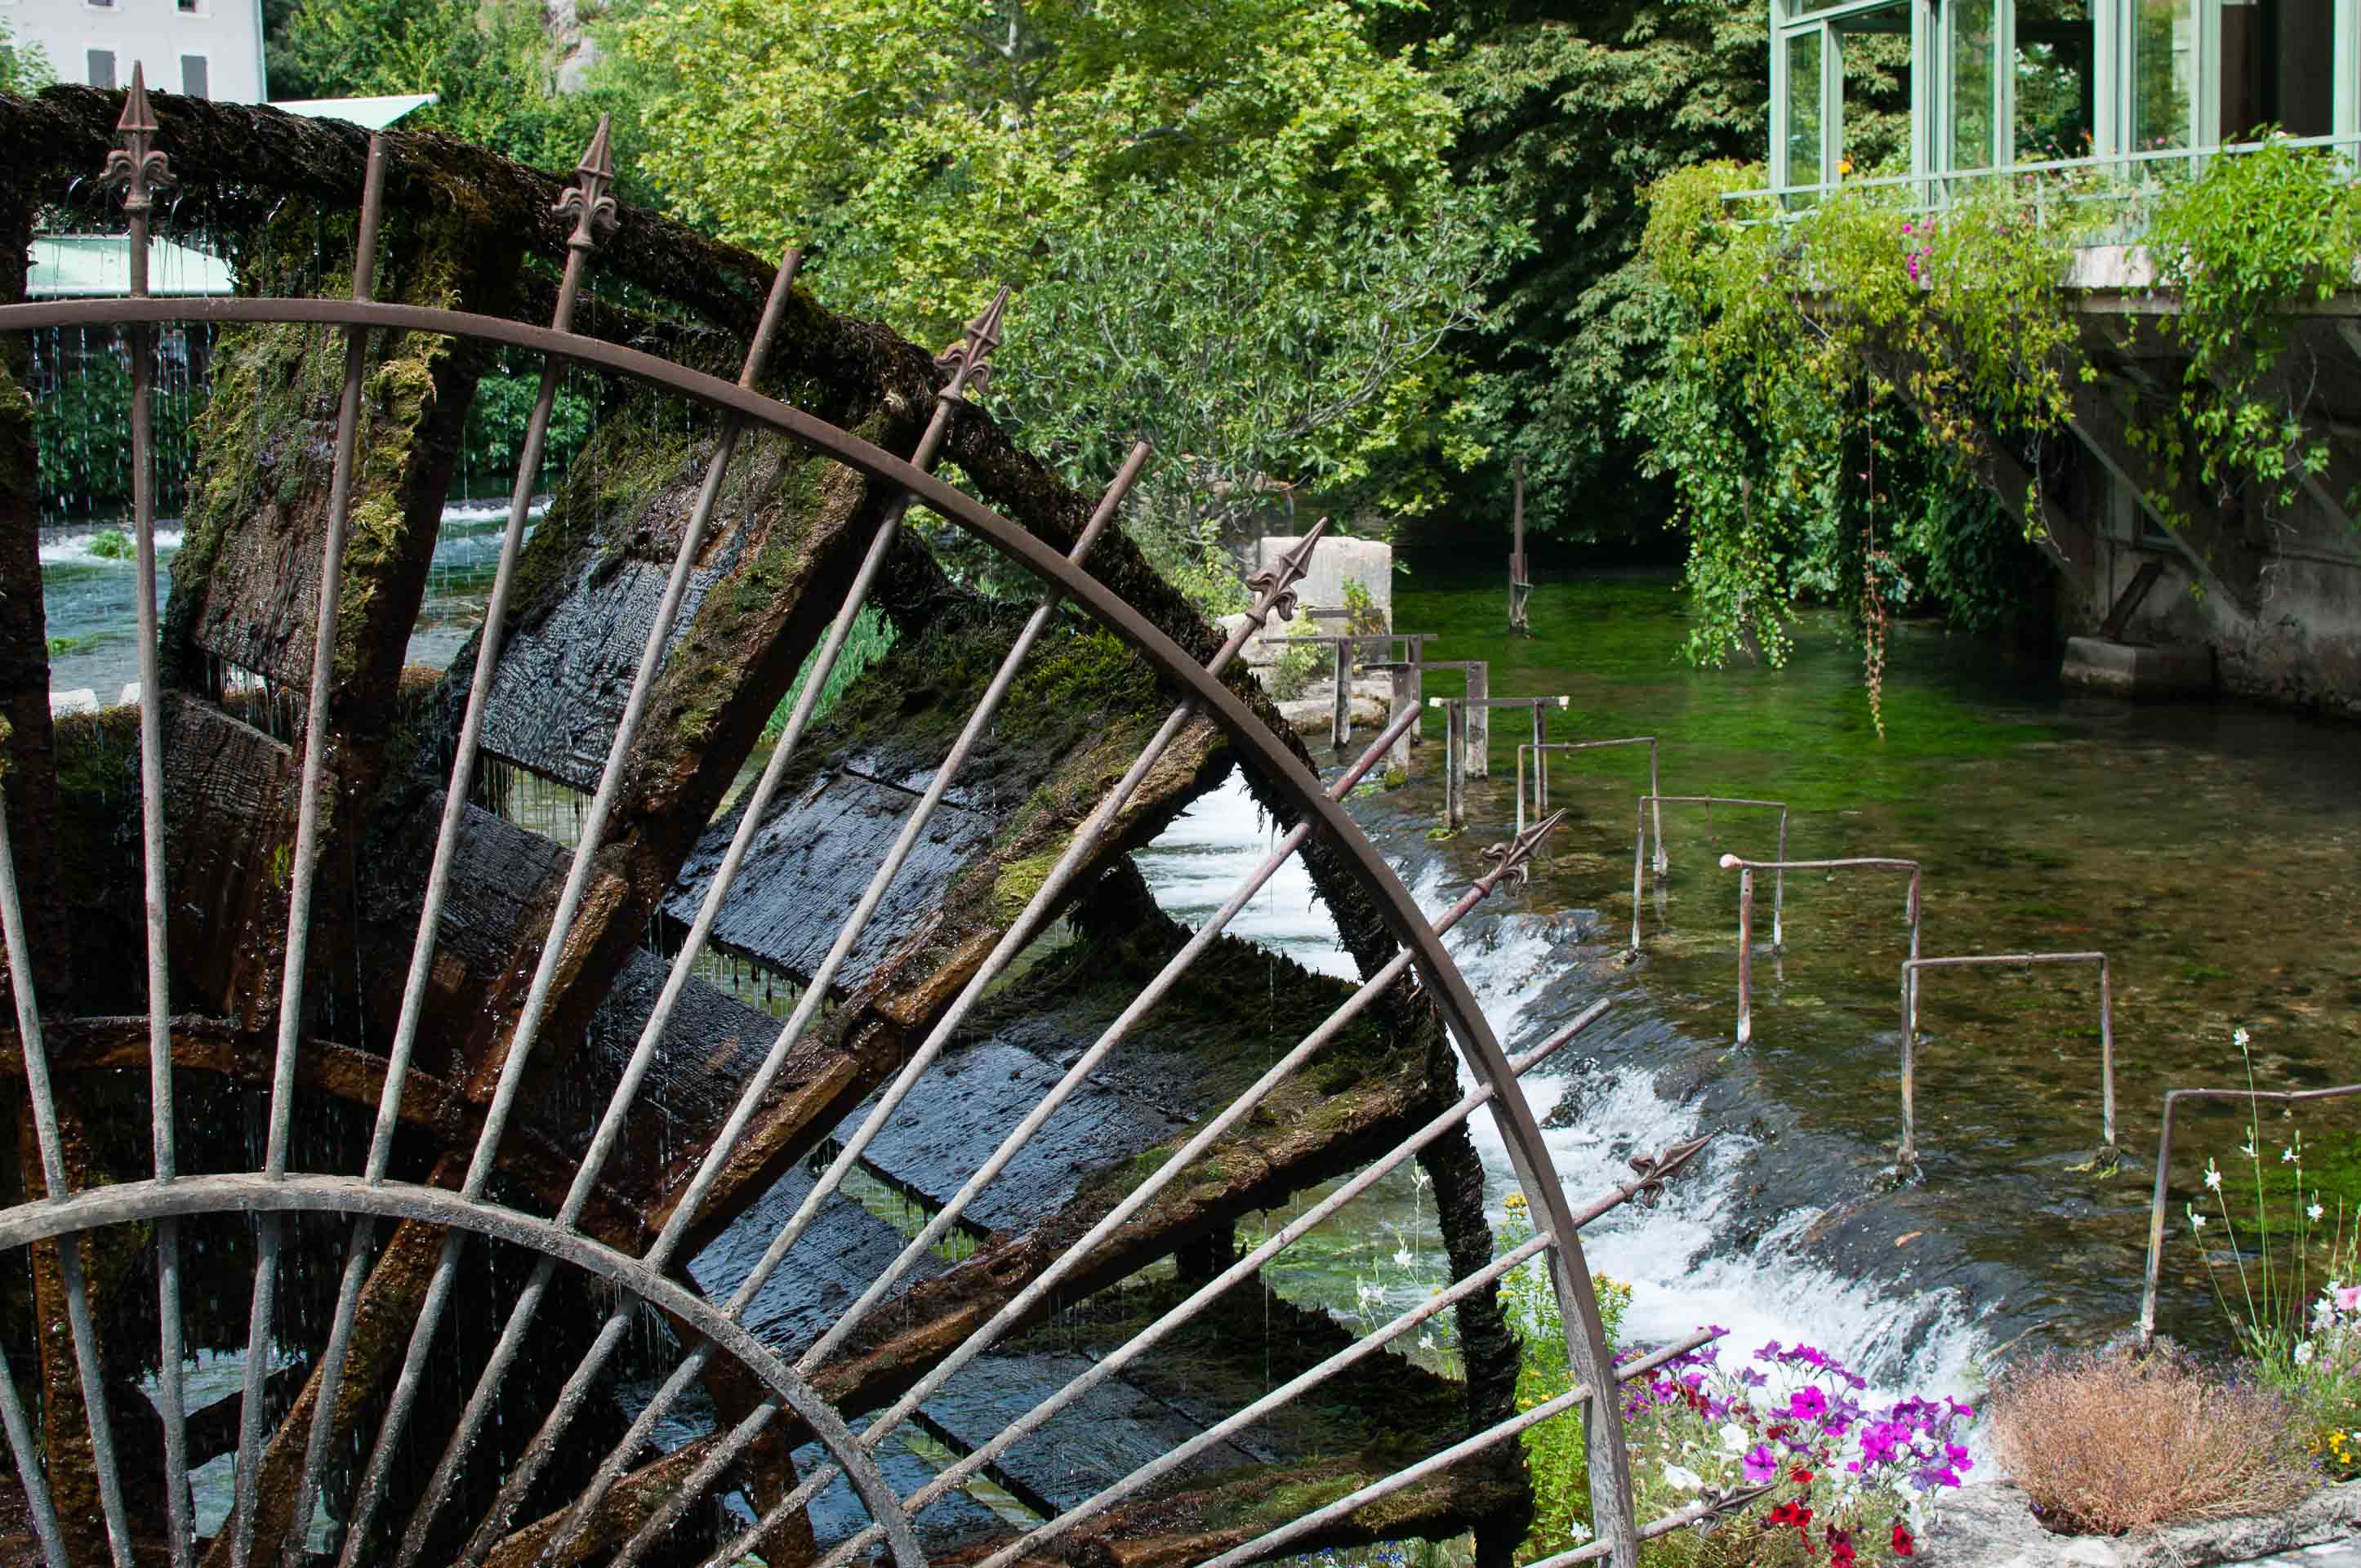 Fontaine de Vaucluse Mulino fiori